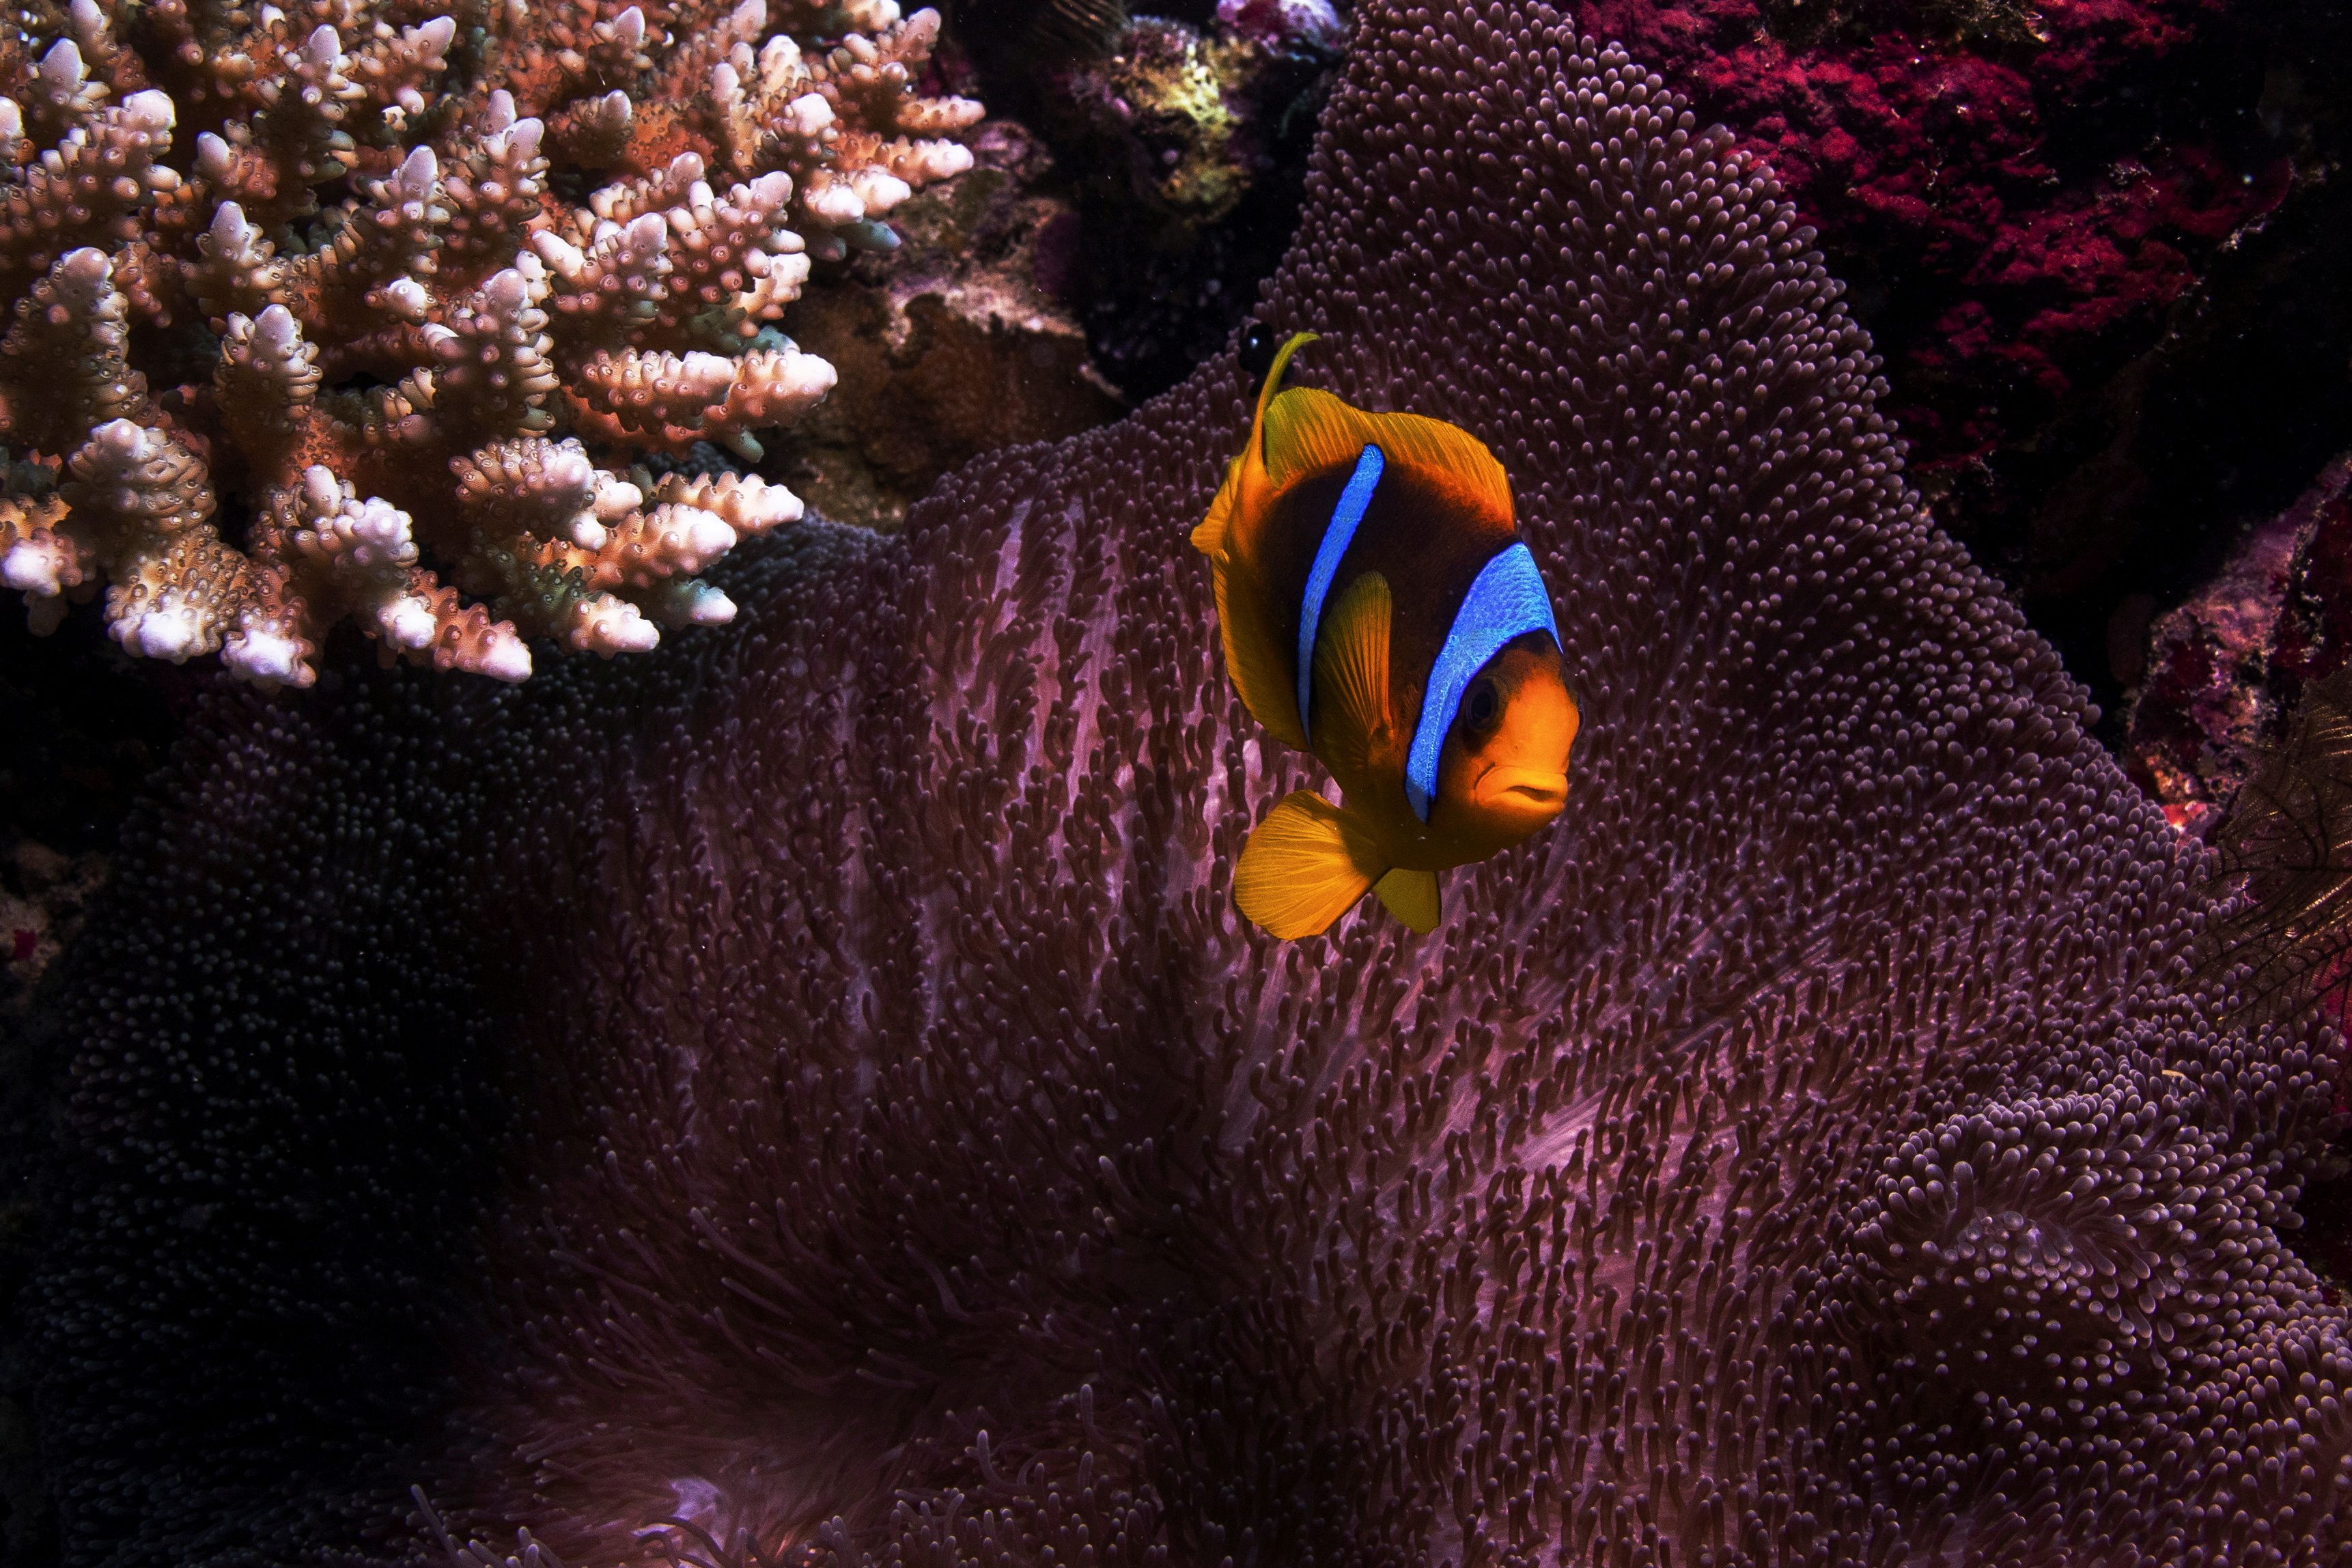 Cuando los corales experimentan blanqueamiento en años consecutivos, se asocia con mayores probabilidades de mortalidad y extinción local
REUTERS/Lucas Jackson/File Photo